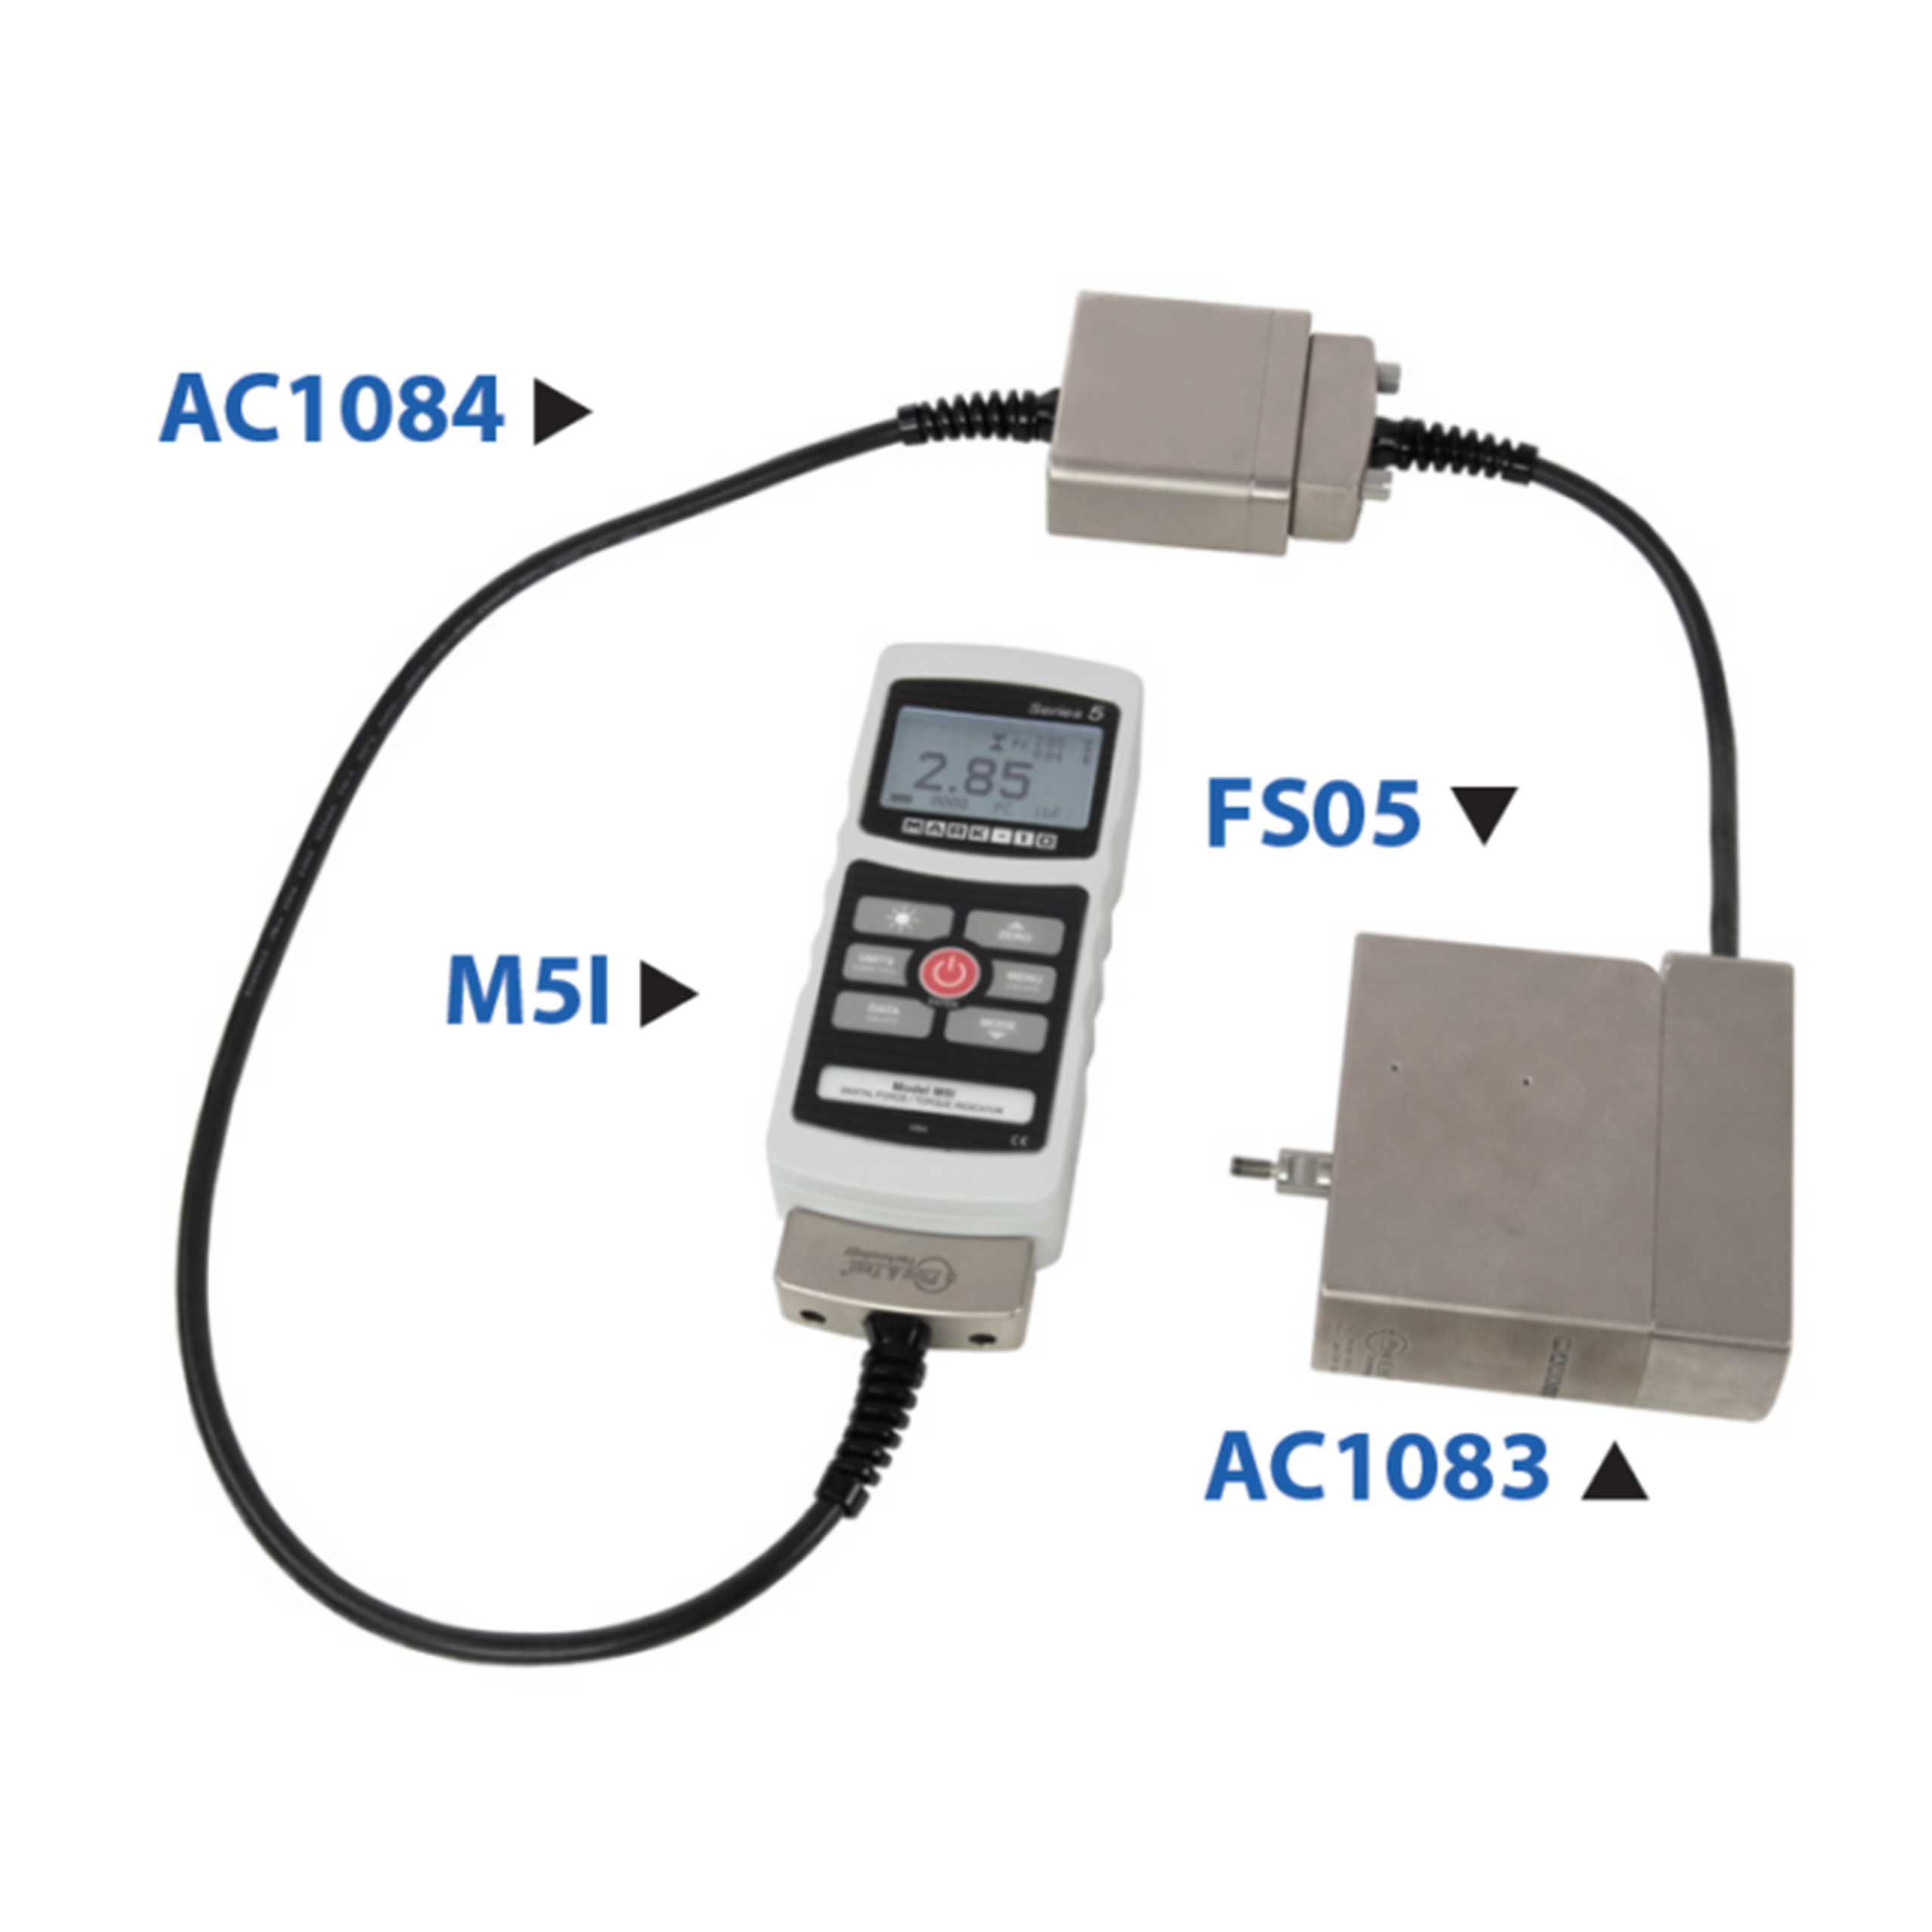 Adapter-FS05-Plug-Test®-Stecker-und-Verlaengerungen